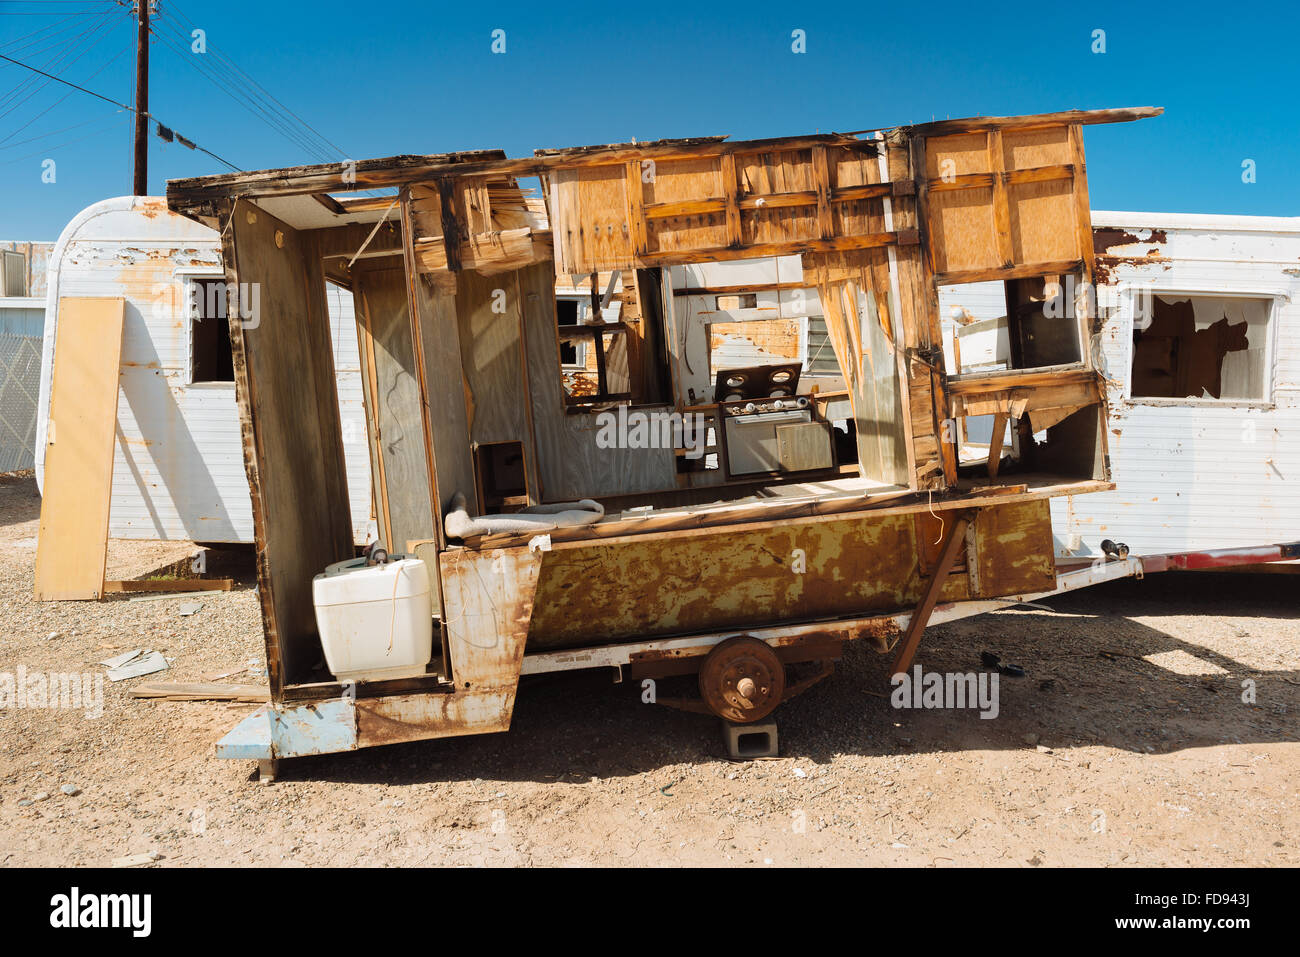 eine-verlassene-wohnwagen-in-bombay-beach-kalifornien-am-ostlichen-ufer-des-salton-meeres-fd943j.jpg